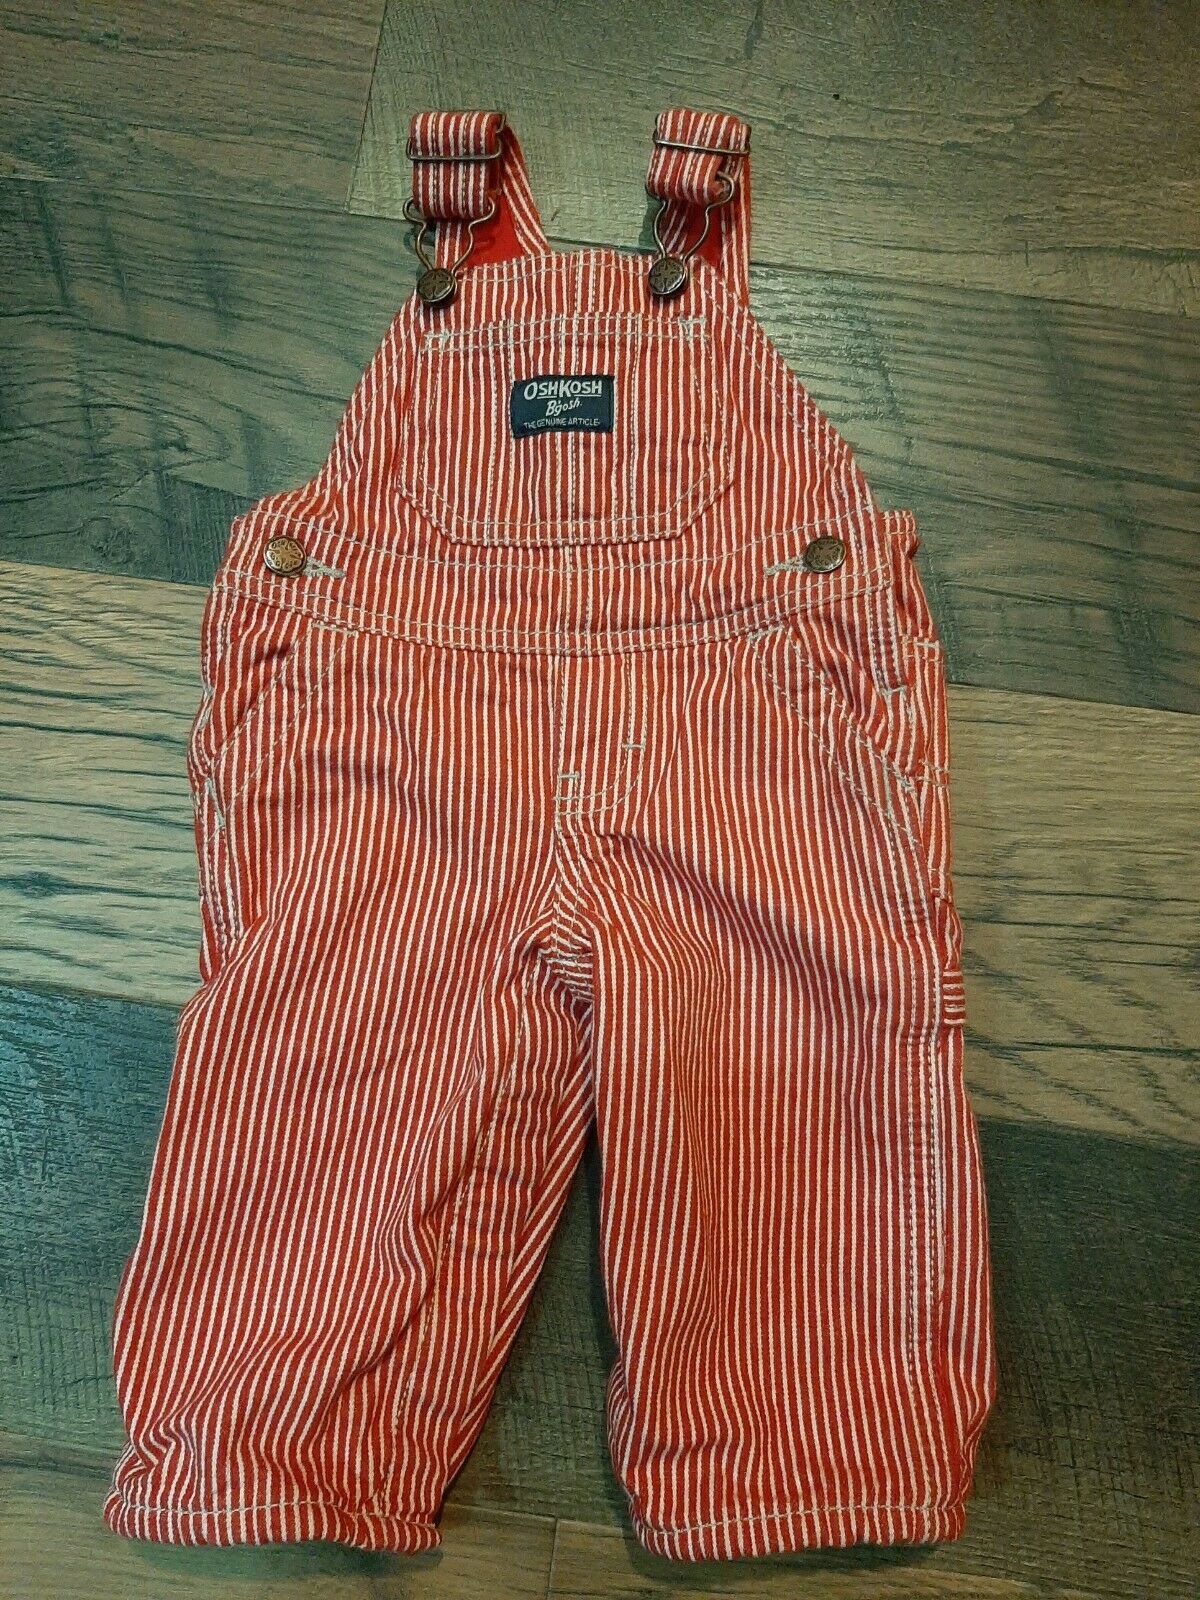 Vintage Oshkosh B'gosh Baby Bib Overalls Vestbak 6 Month Red Striped Lined